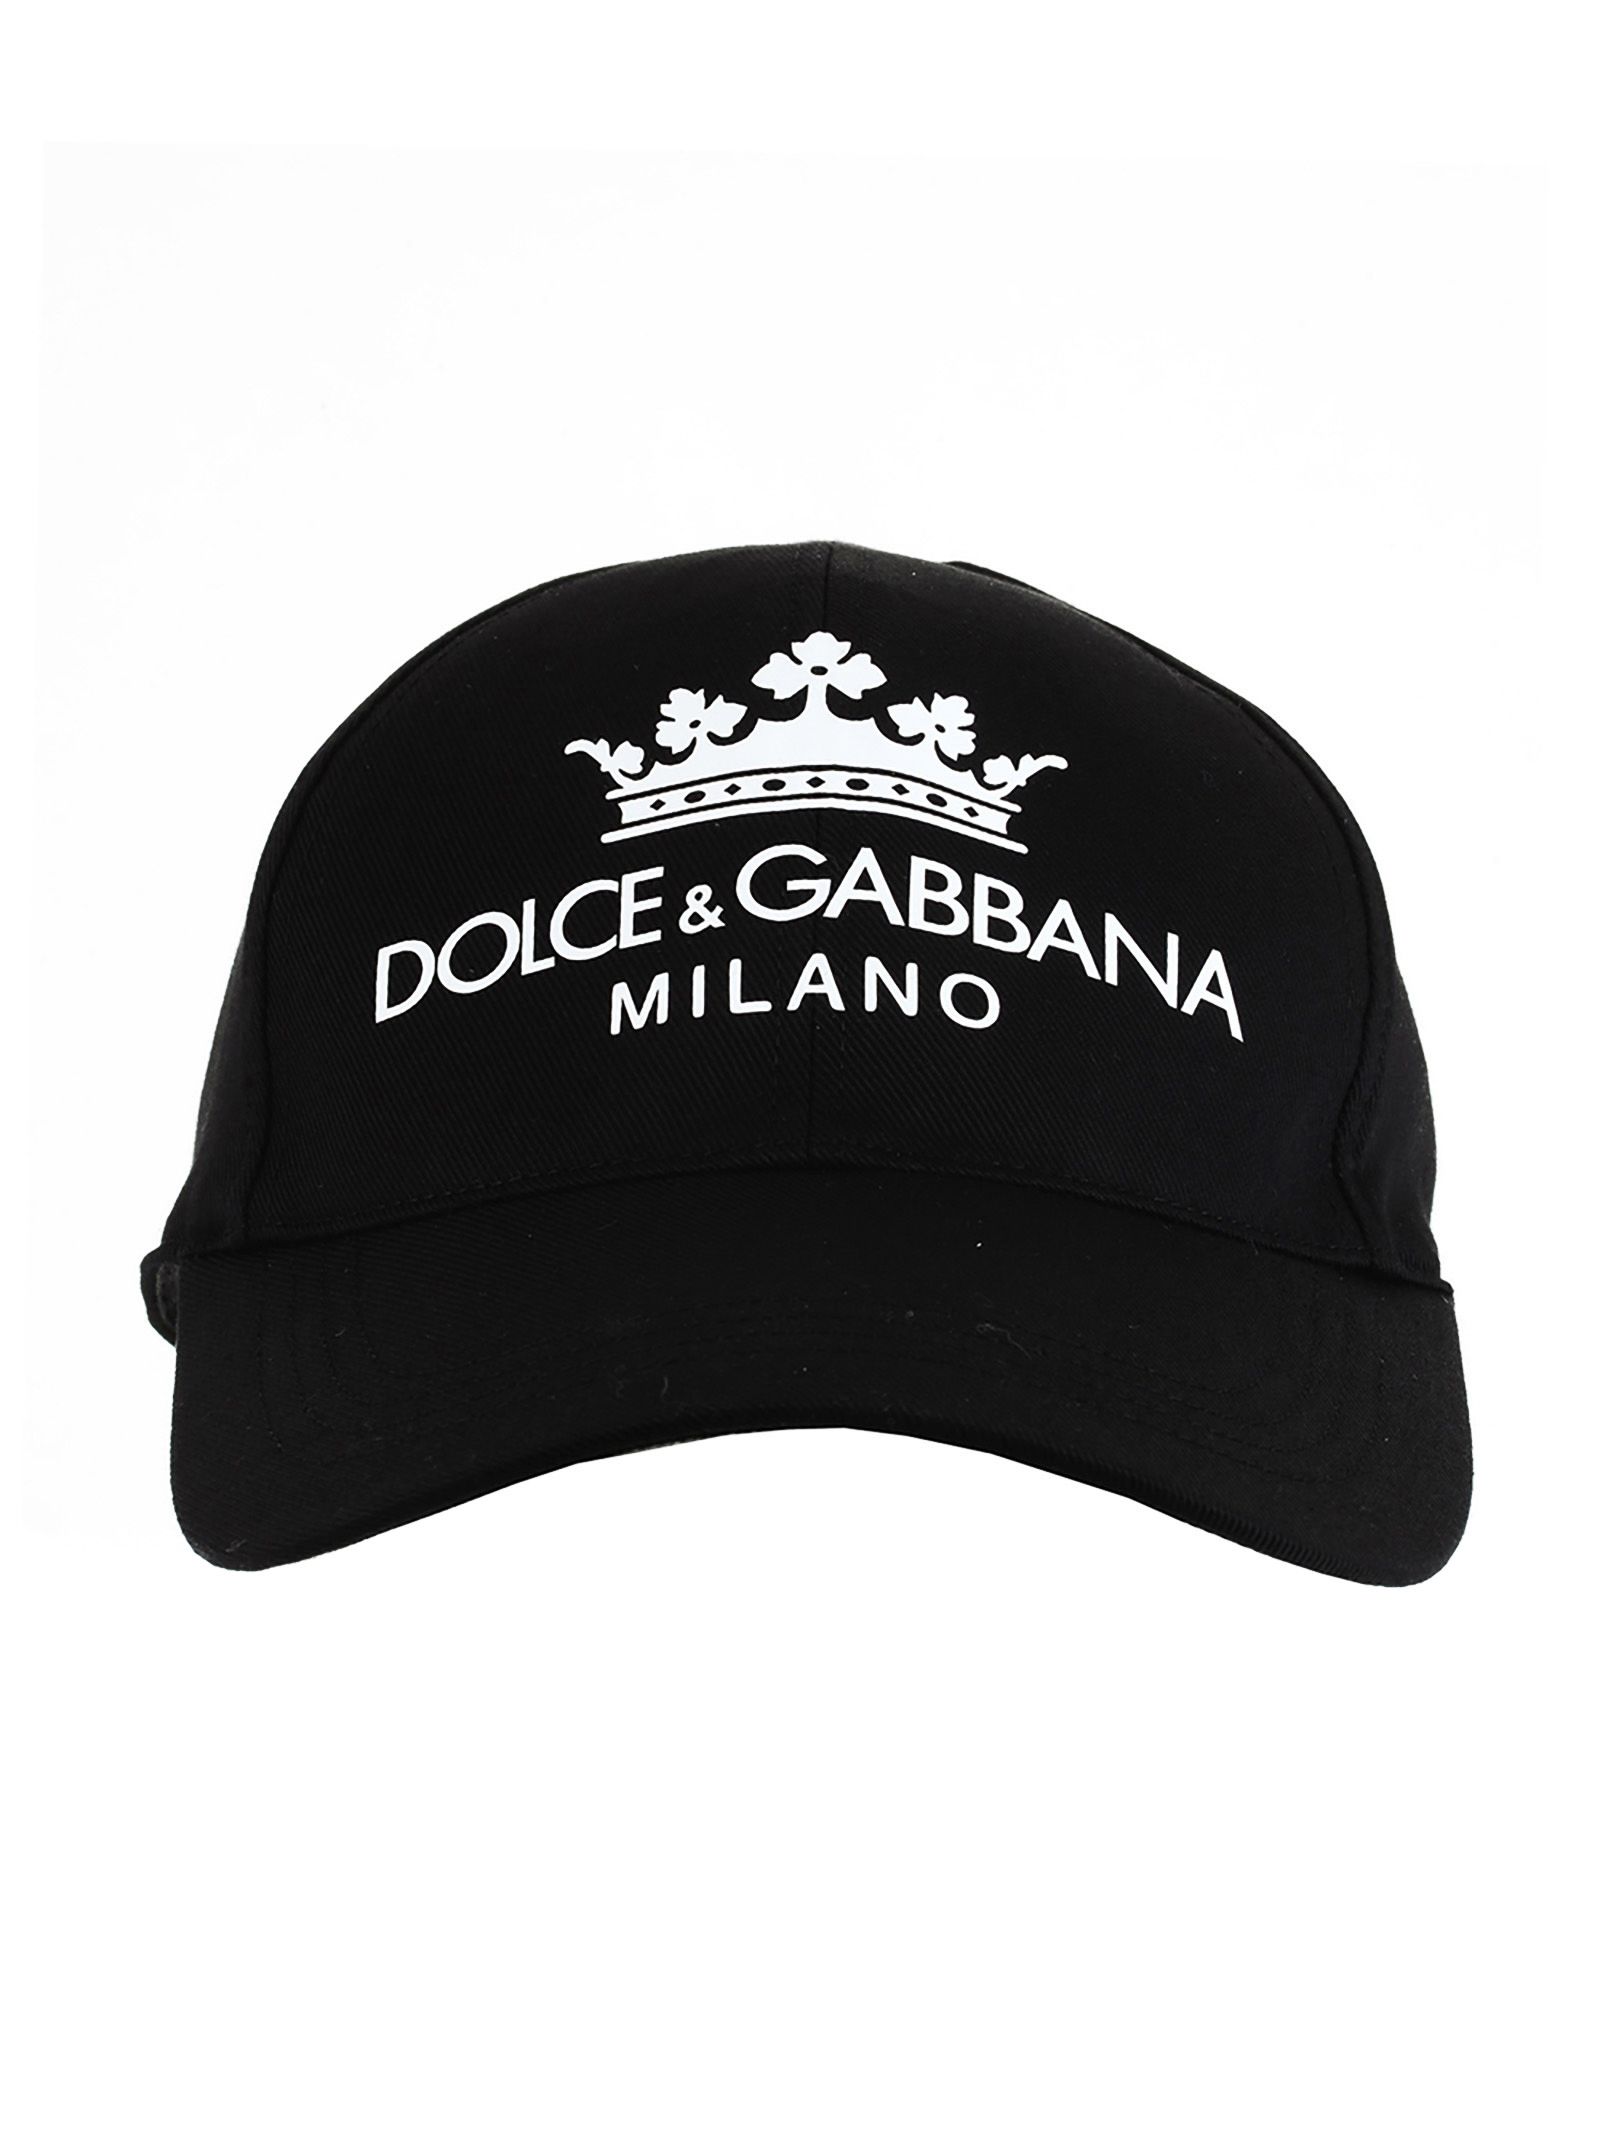 Dolce & Gabbana Dolce & Gabbana Baseball Cap With Print - BLACK ...